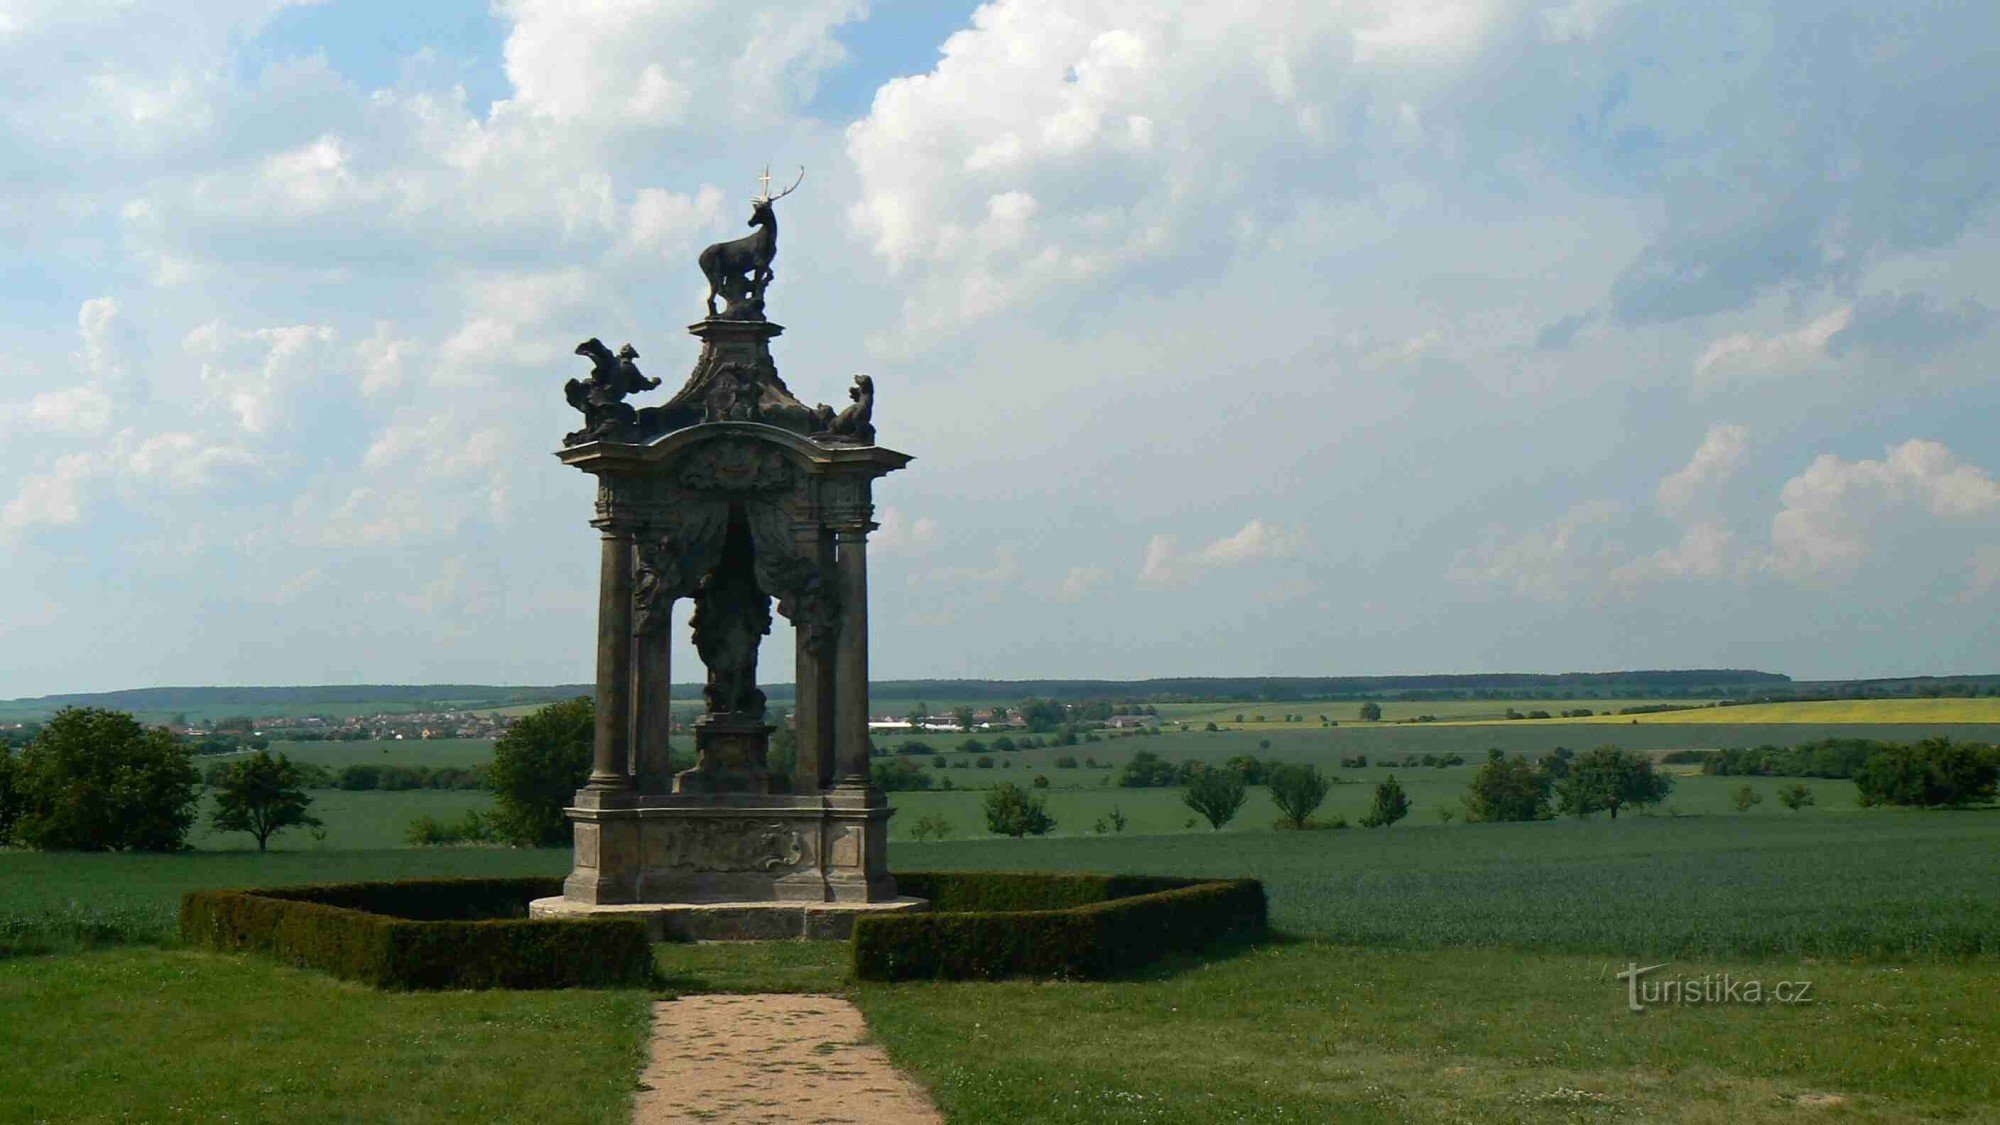 Đài tưởng niệm Hoàng đế Charles VI.